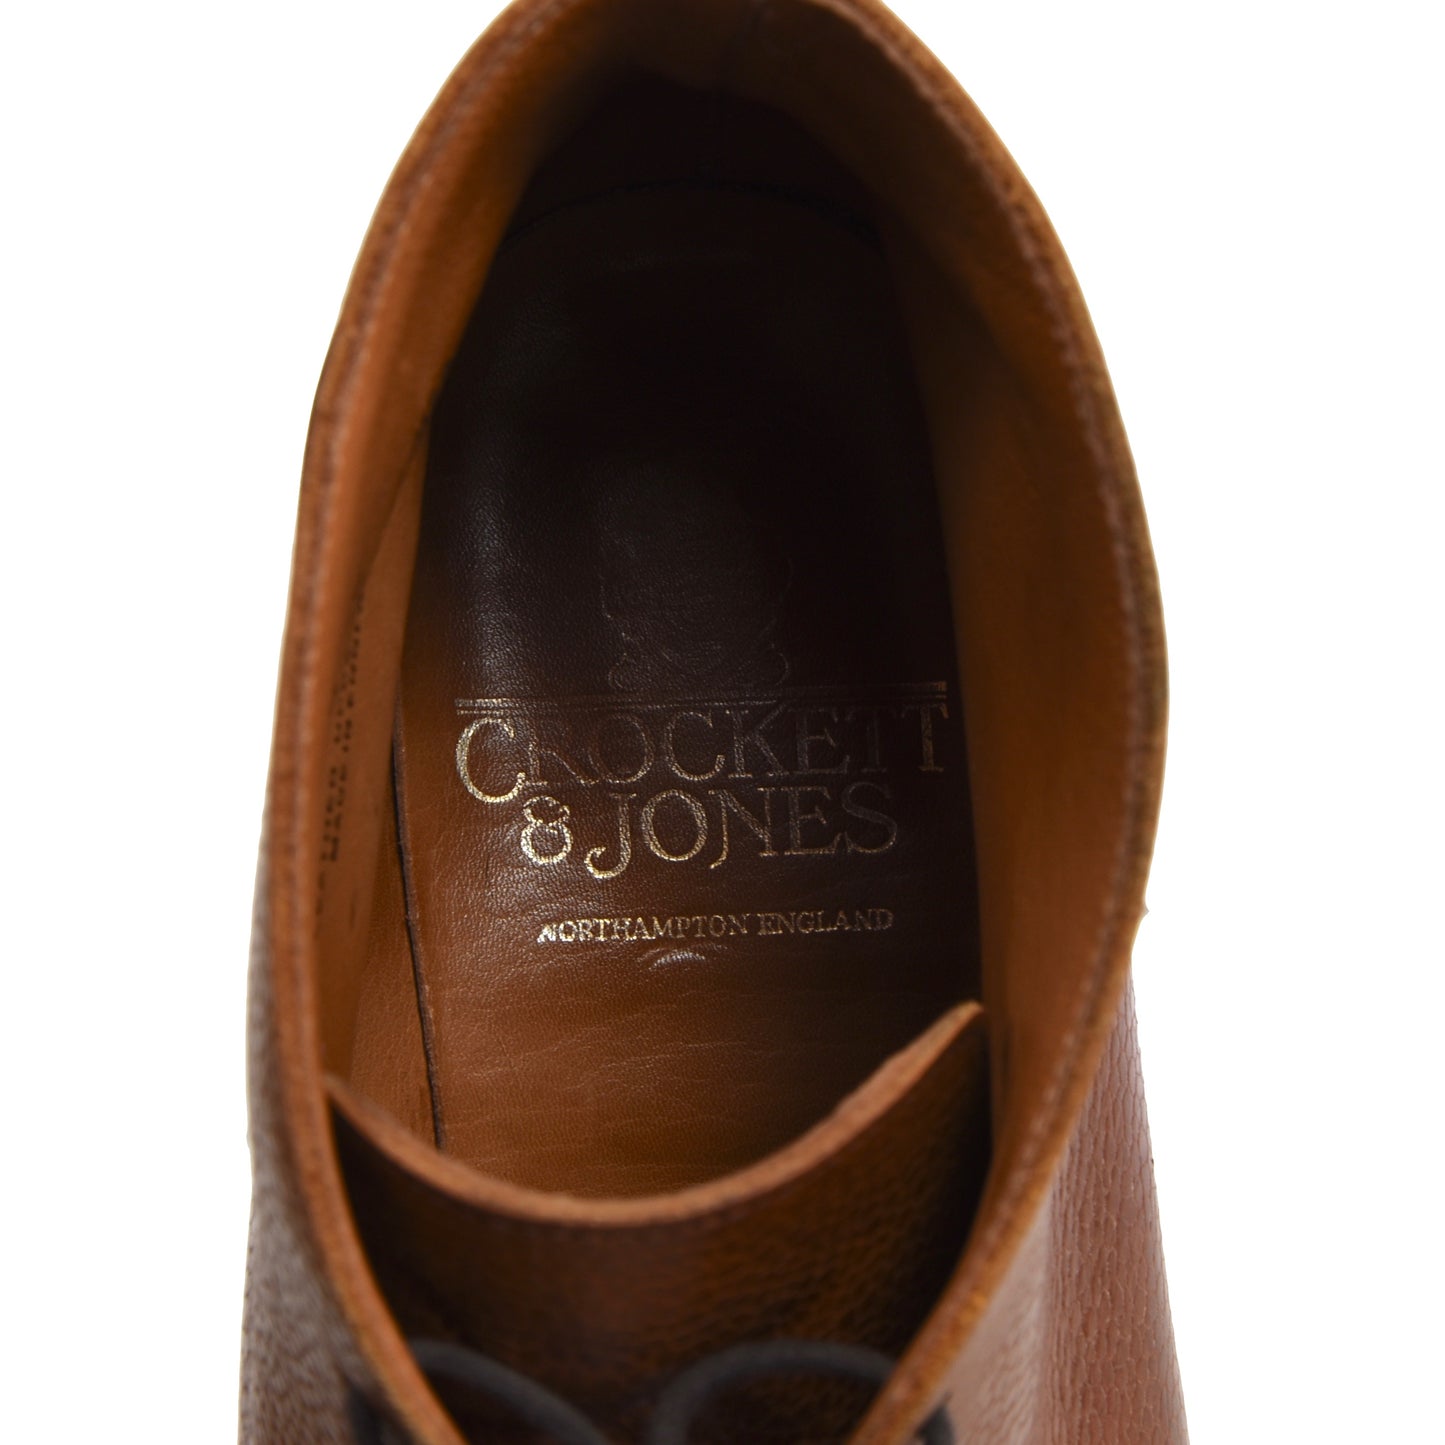 Crockett & Jones Chepstow Boots Size 8E - Cognac/Tan